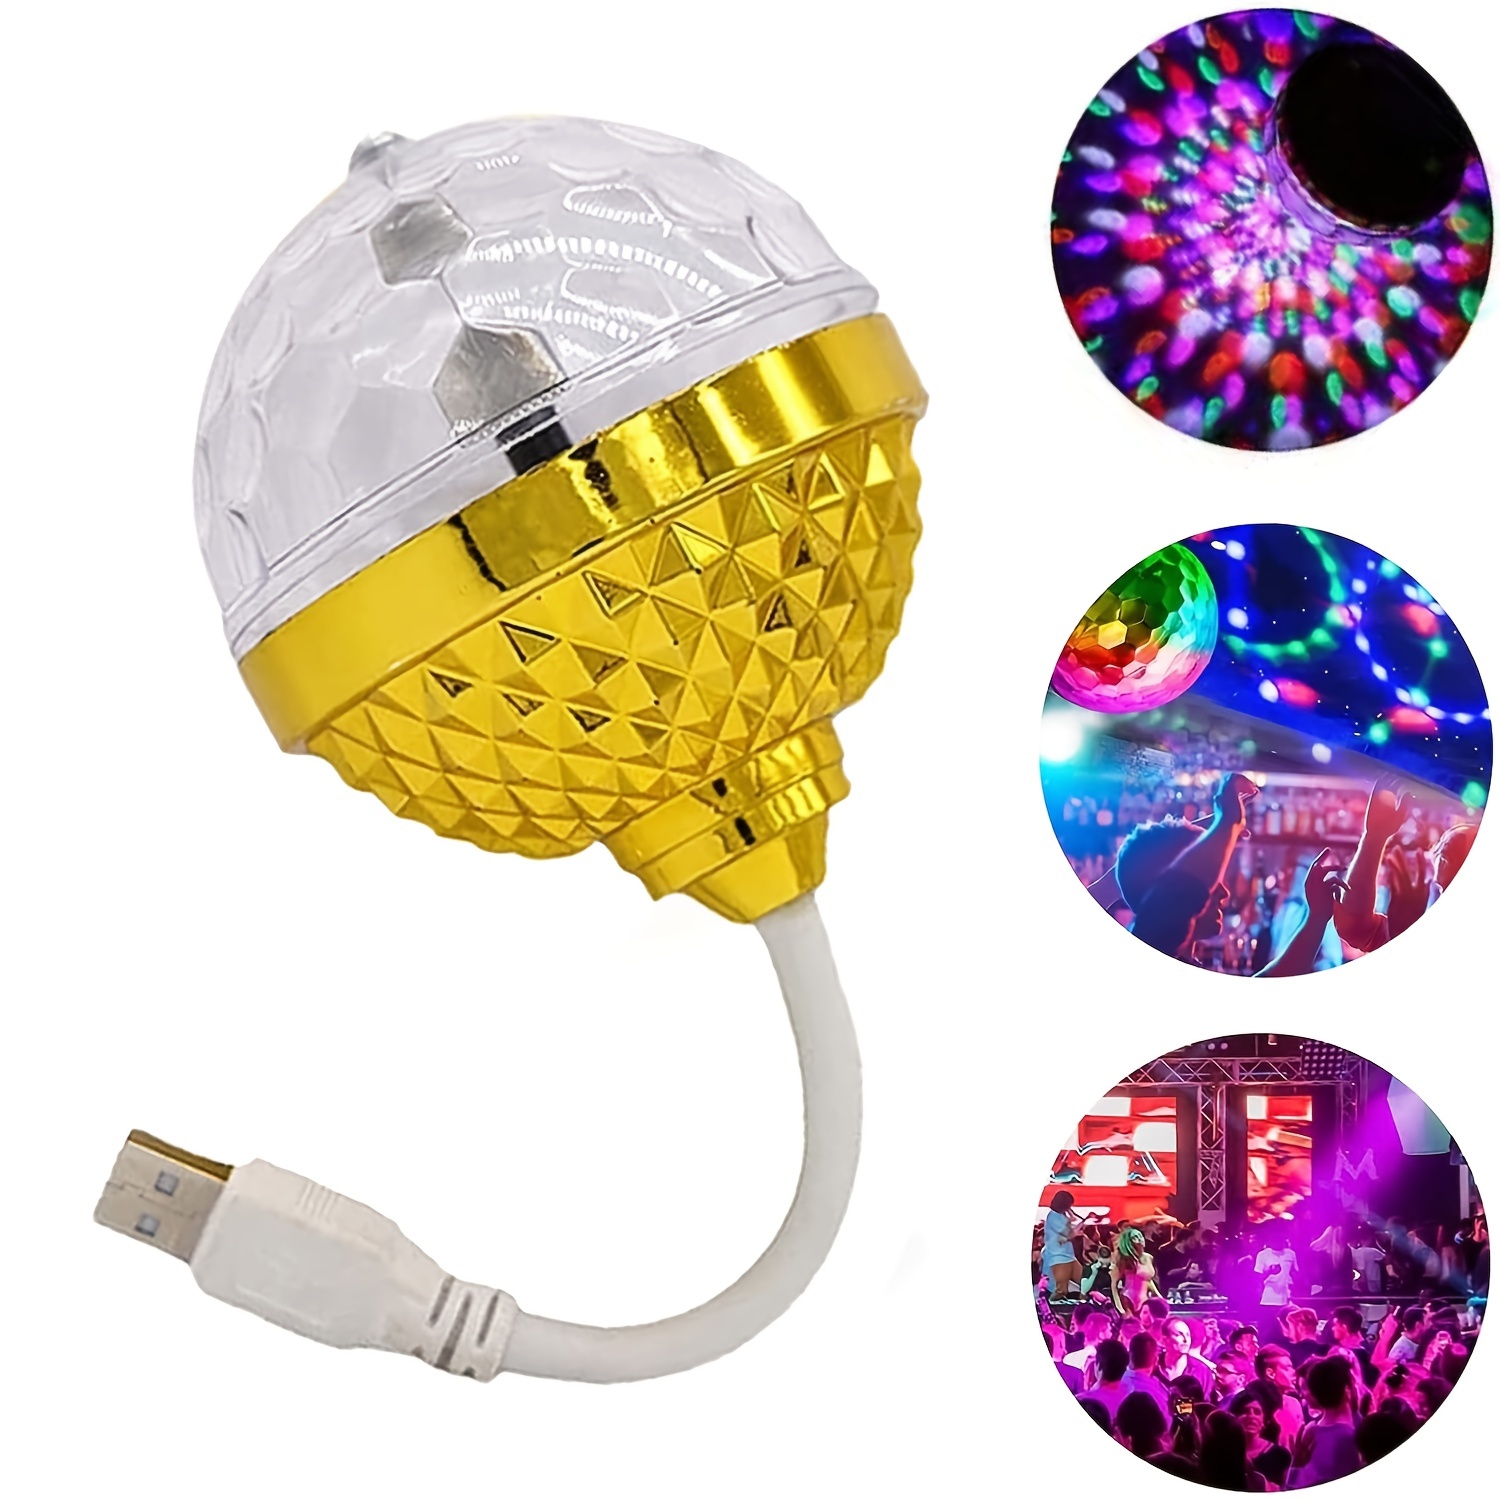 1 pc Boule Magique Rotative Colorée, Nouvelle Boule Disco Led Colorée  Rotation USB Ampoule, Premium Party Lights Disco Magic Light Ampoule Avec  Prises